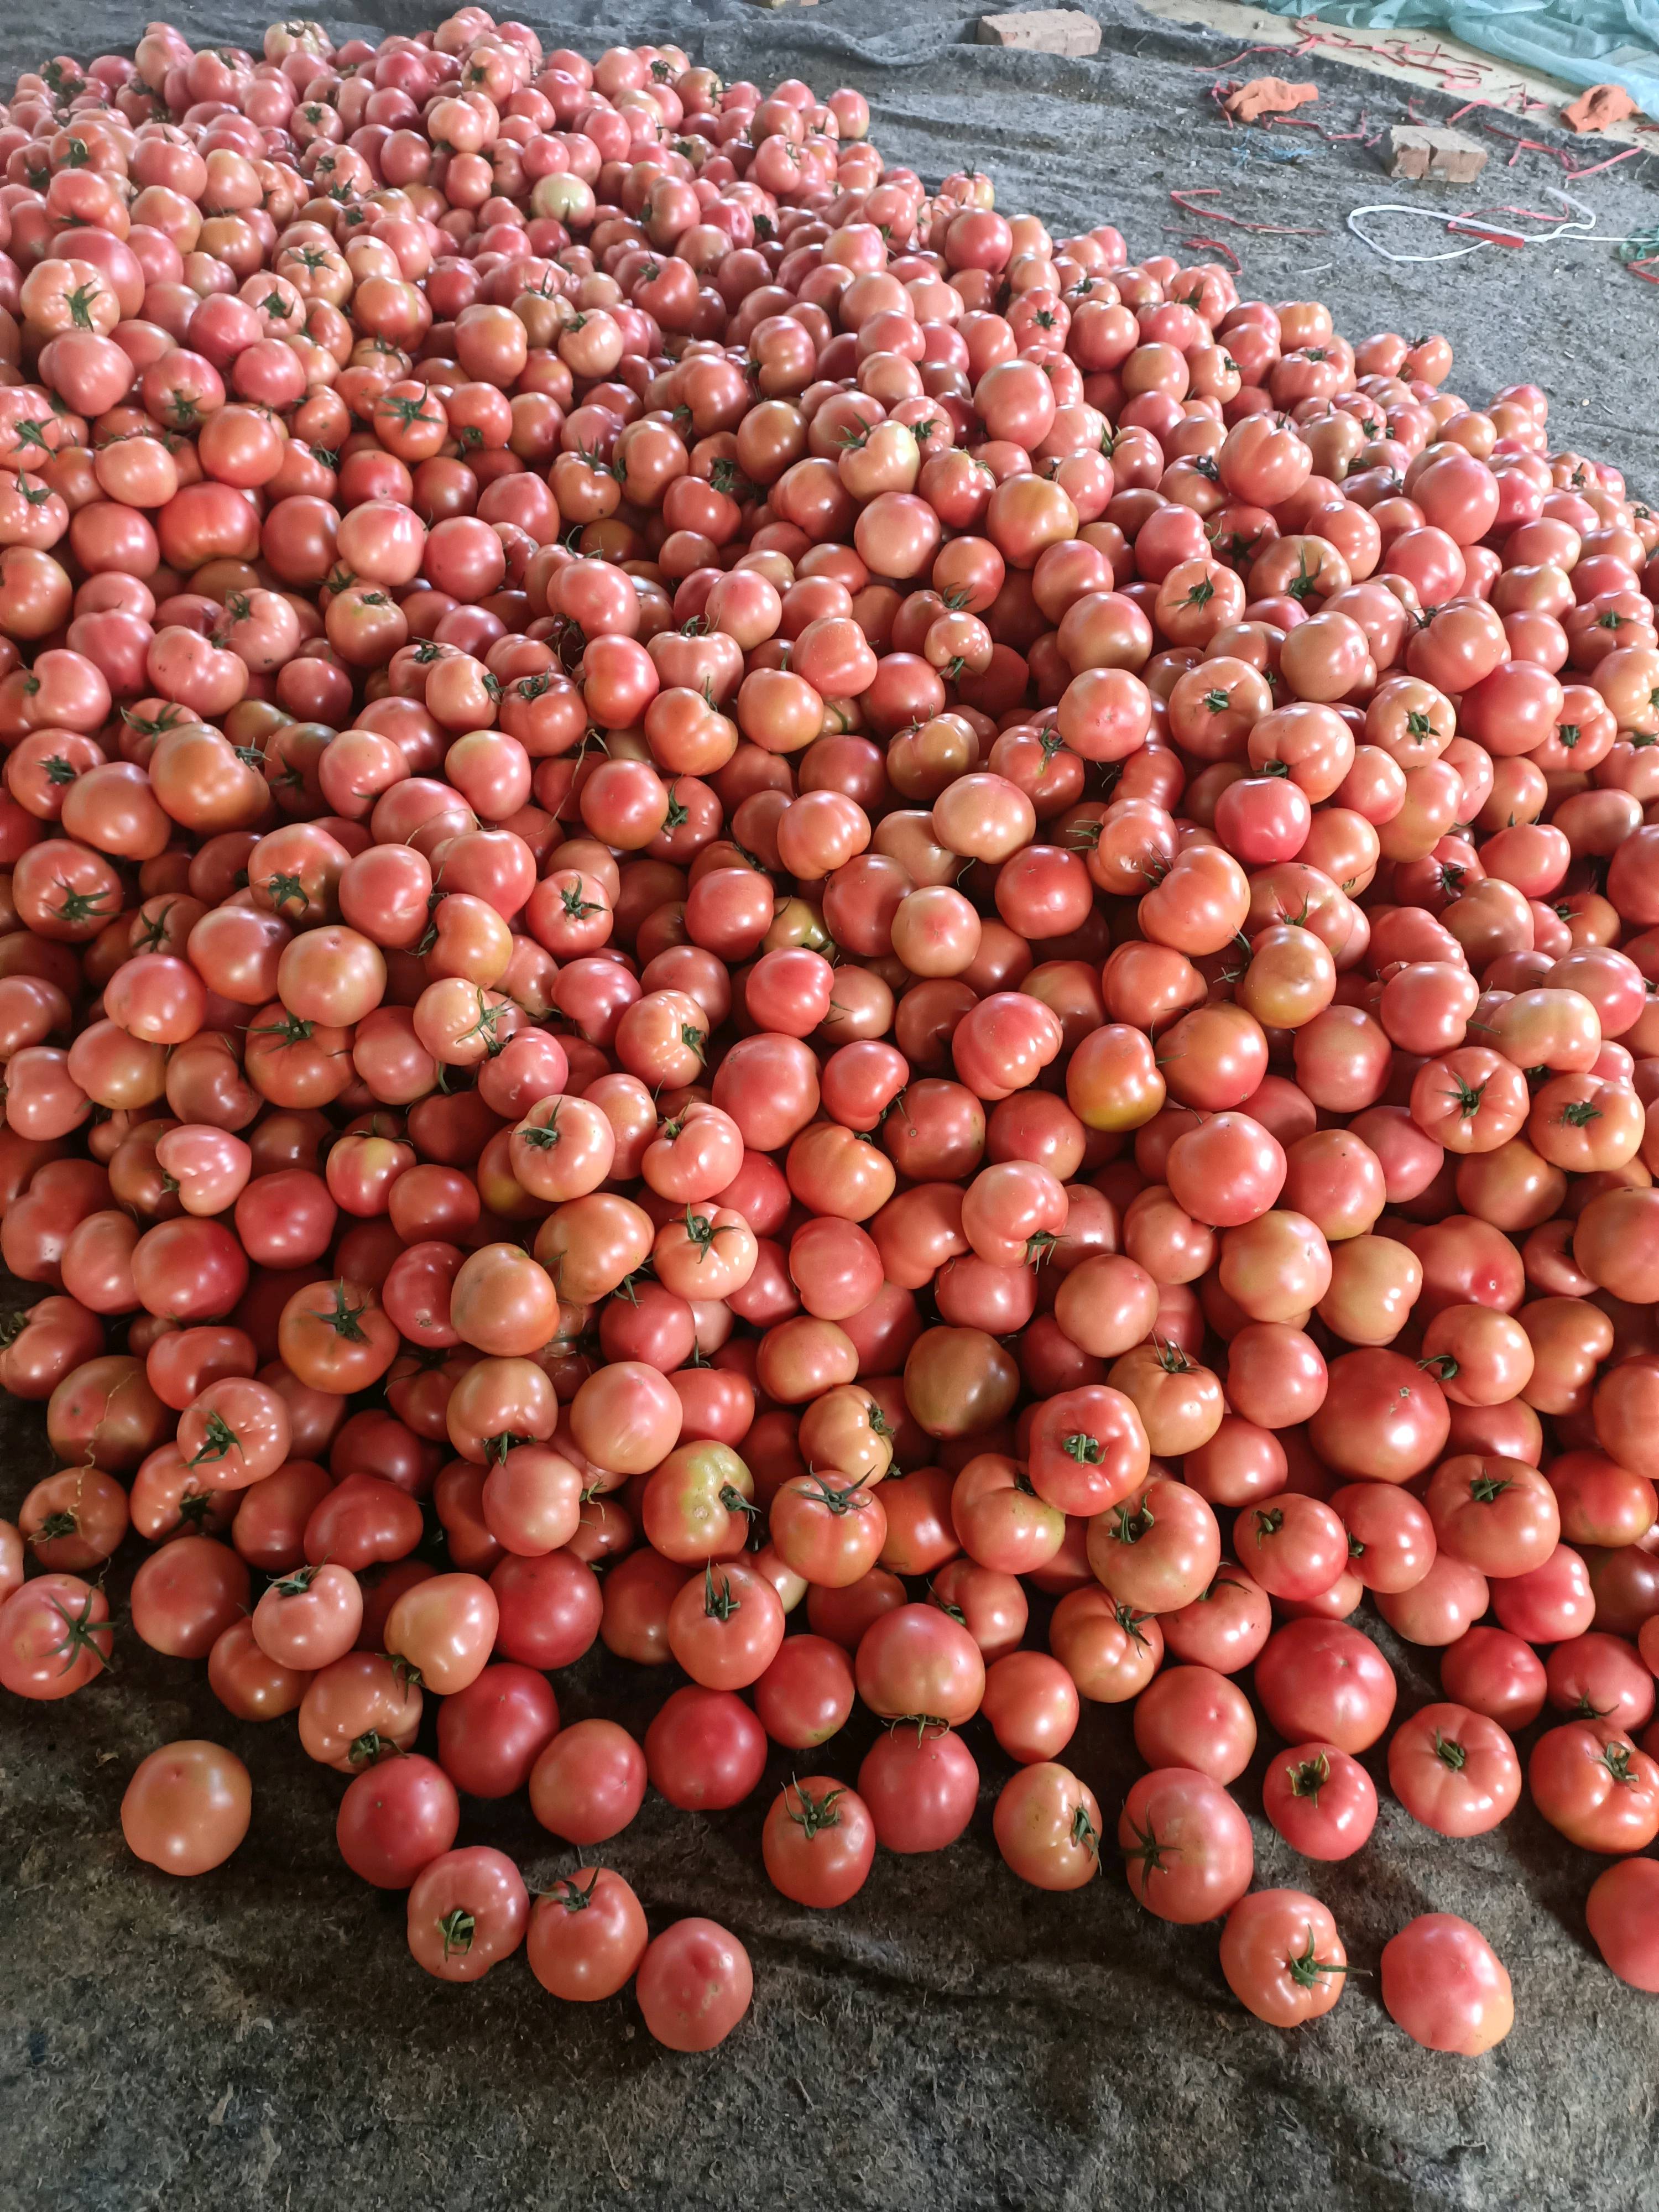 山东西红柿大量供应果型好一手货源价格优惠欢迎新老顾客前来考察收购价格优惠。联系13173448088